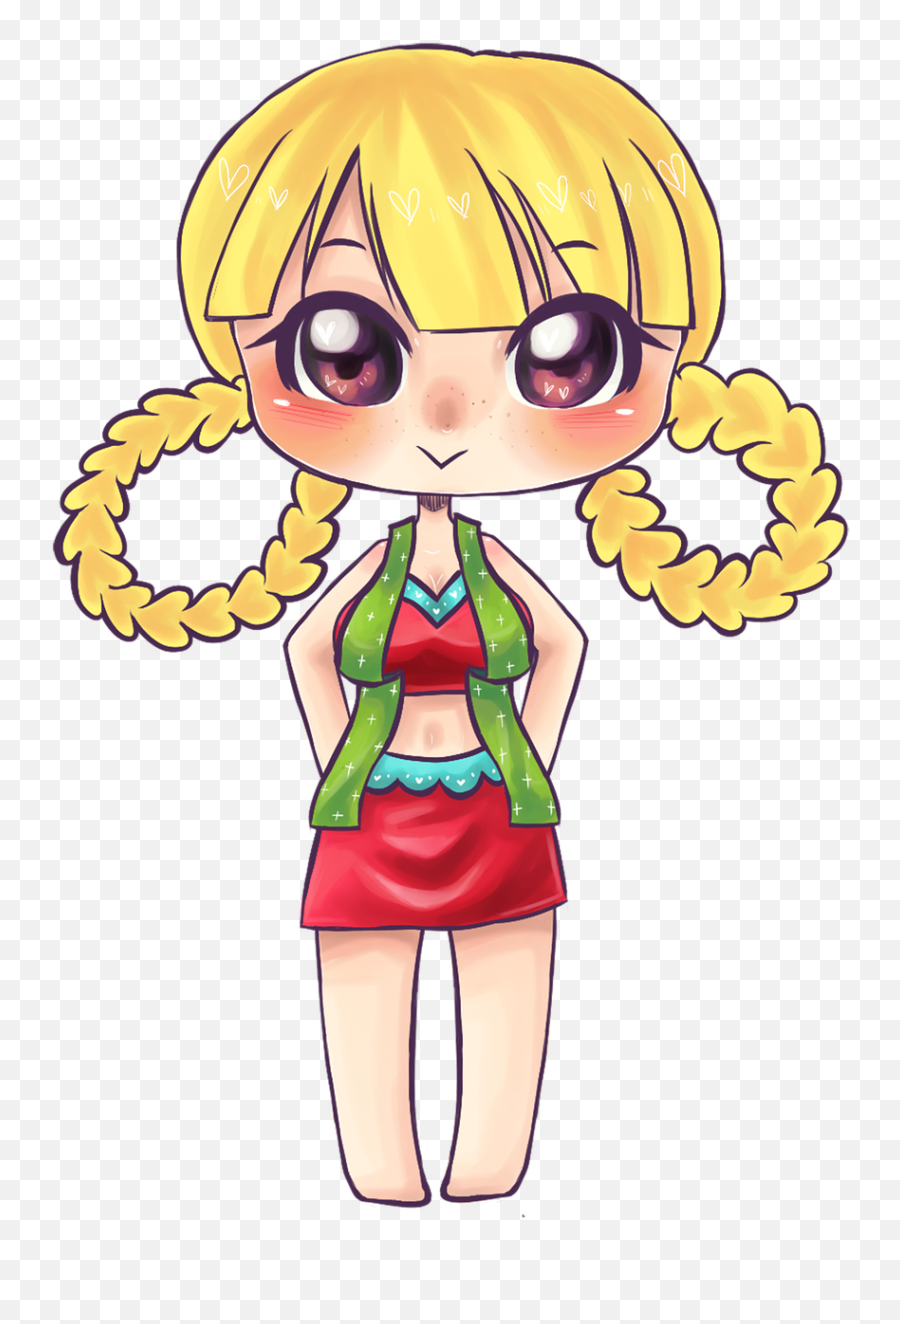 Illustrator Cute Girl - Free Image On Pixabay Tegninger Av Jenter Png,Anime Character Png